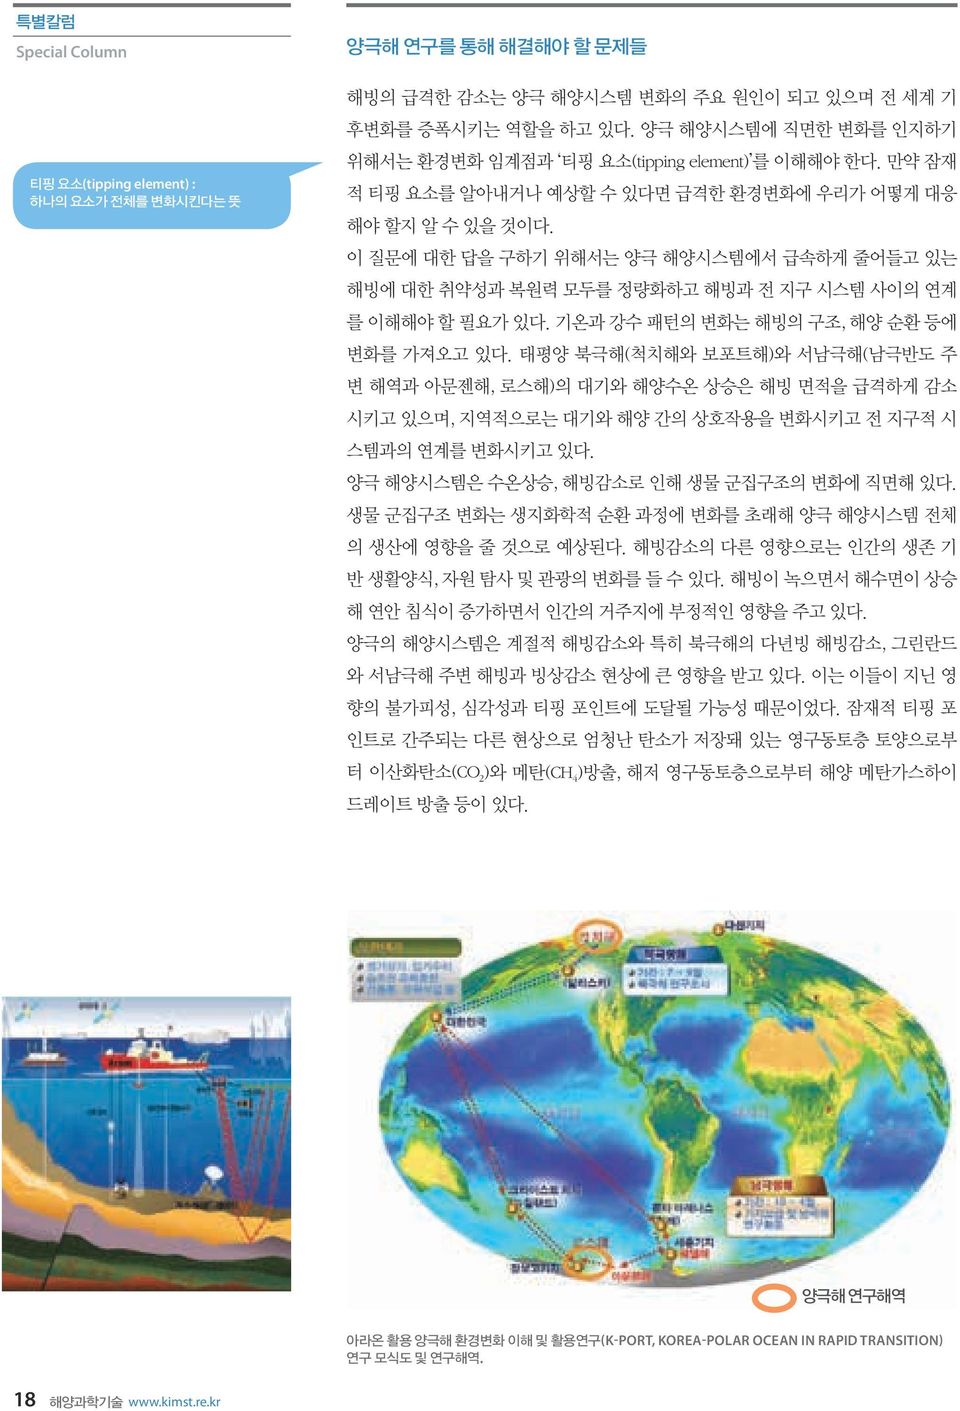 양극해 환경변화 이해 및 활용연구(K-PORT, KOREA-POLAR OCEAN IN